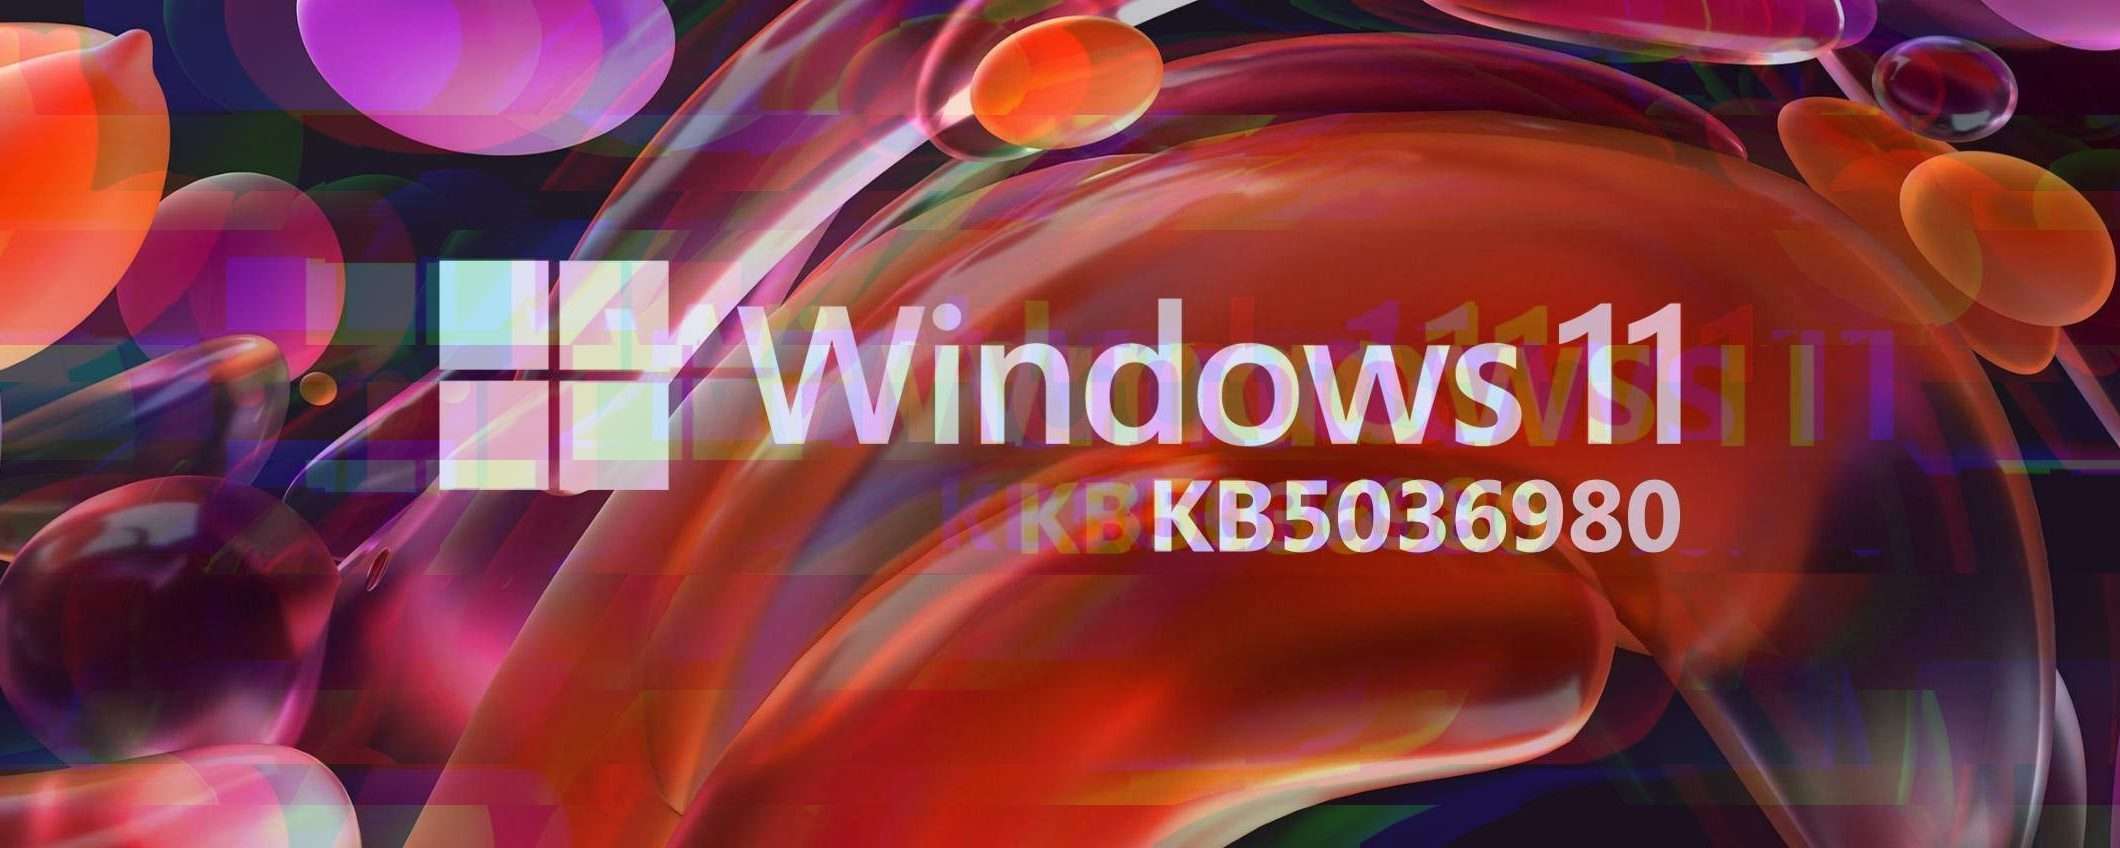 Windows 11: problemi con l'aggiornamento KB5036980